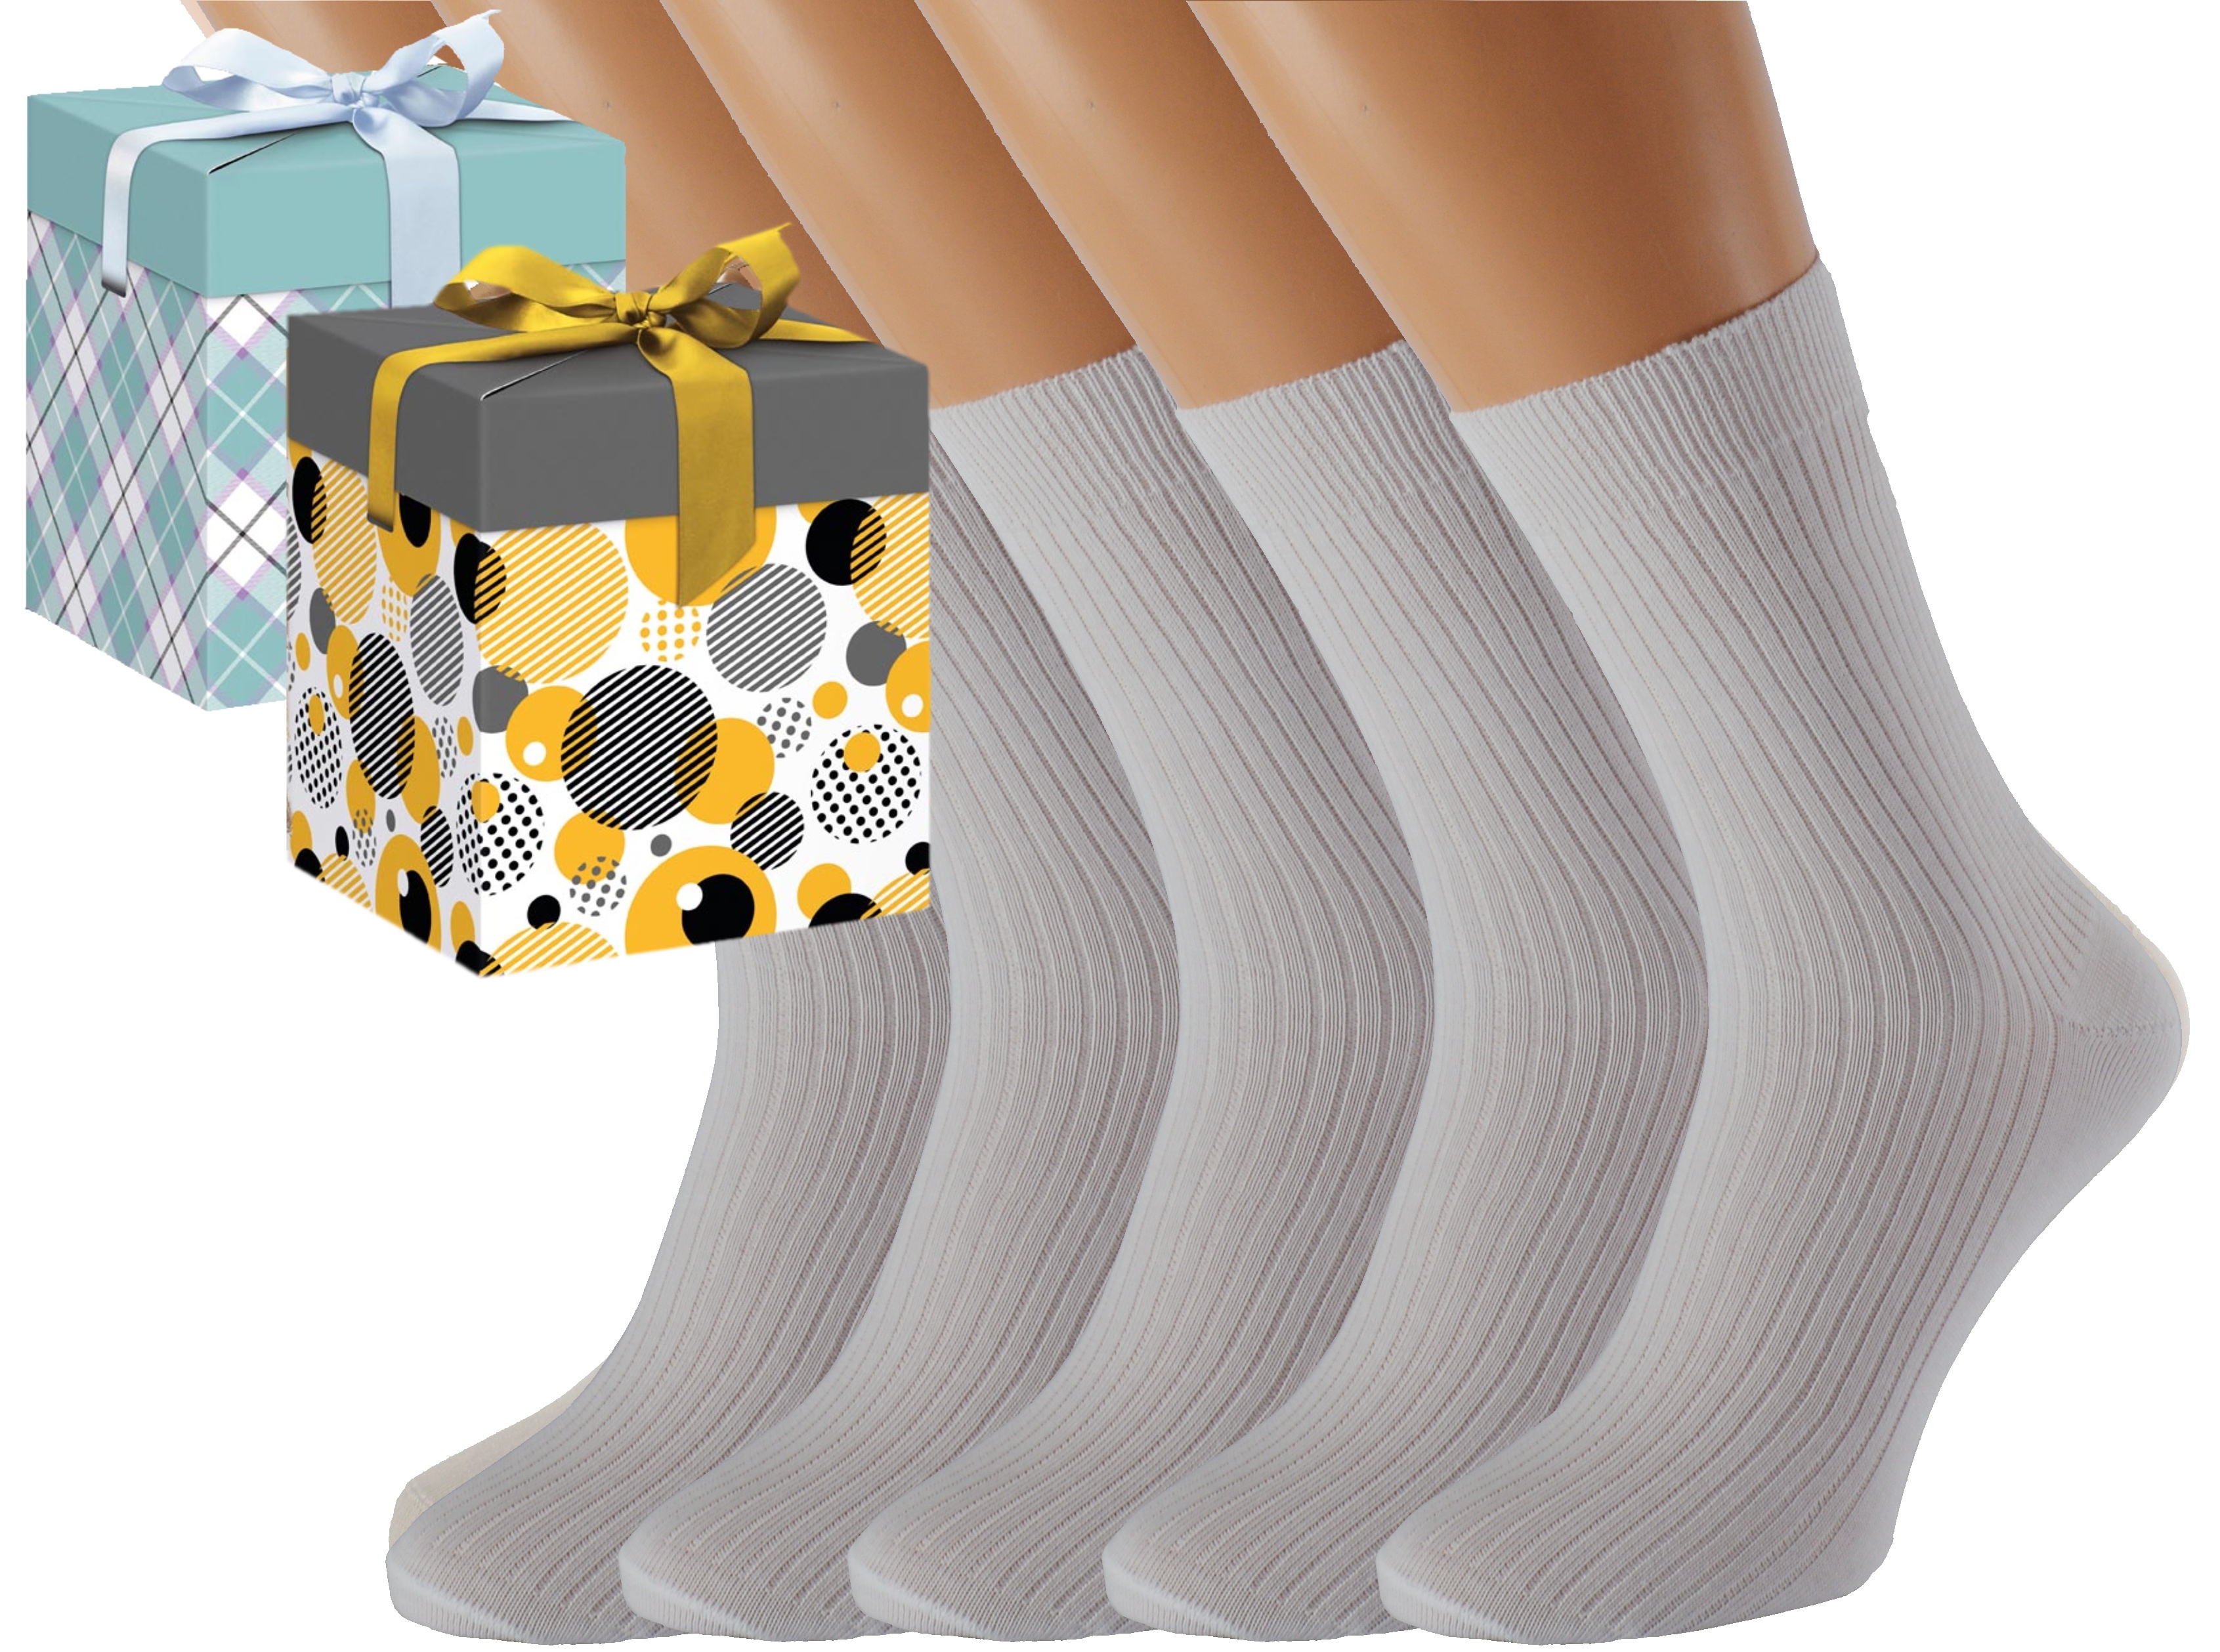 Dárkové balení 5 párů zdravotních ponožek LUKÁŠ Barva: Bílé, Velikost: EUR 36-38 (UK 4-5), Zvolte variantu dárkového balení: Modrá s oky